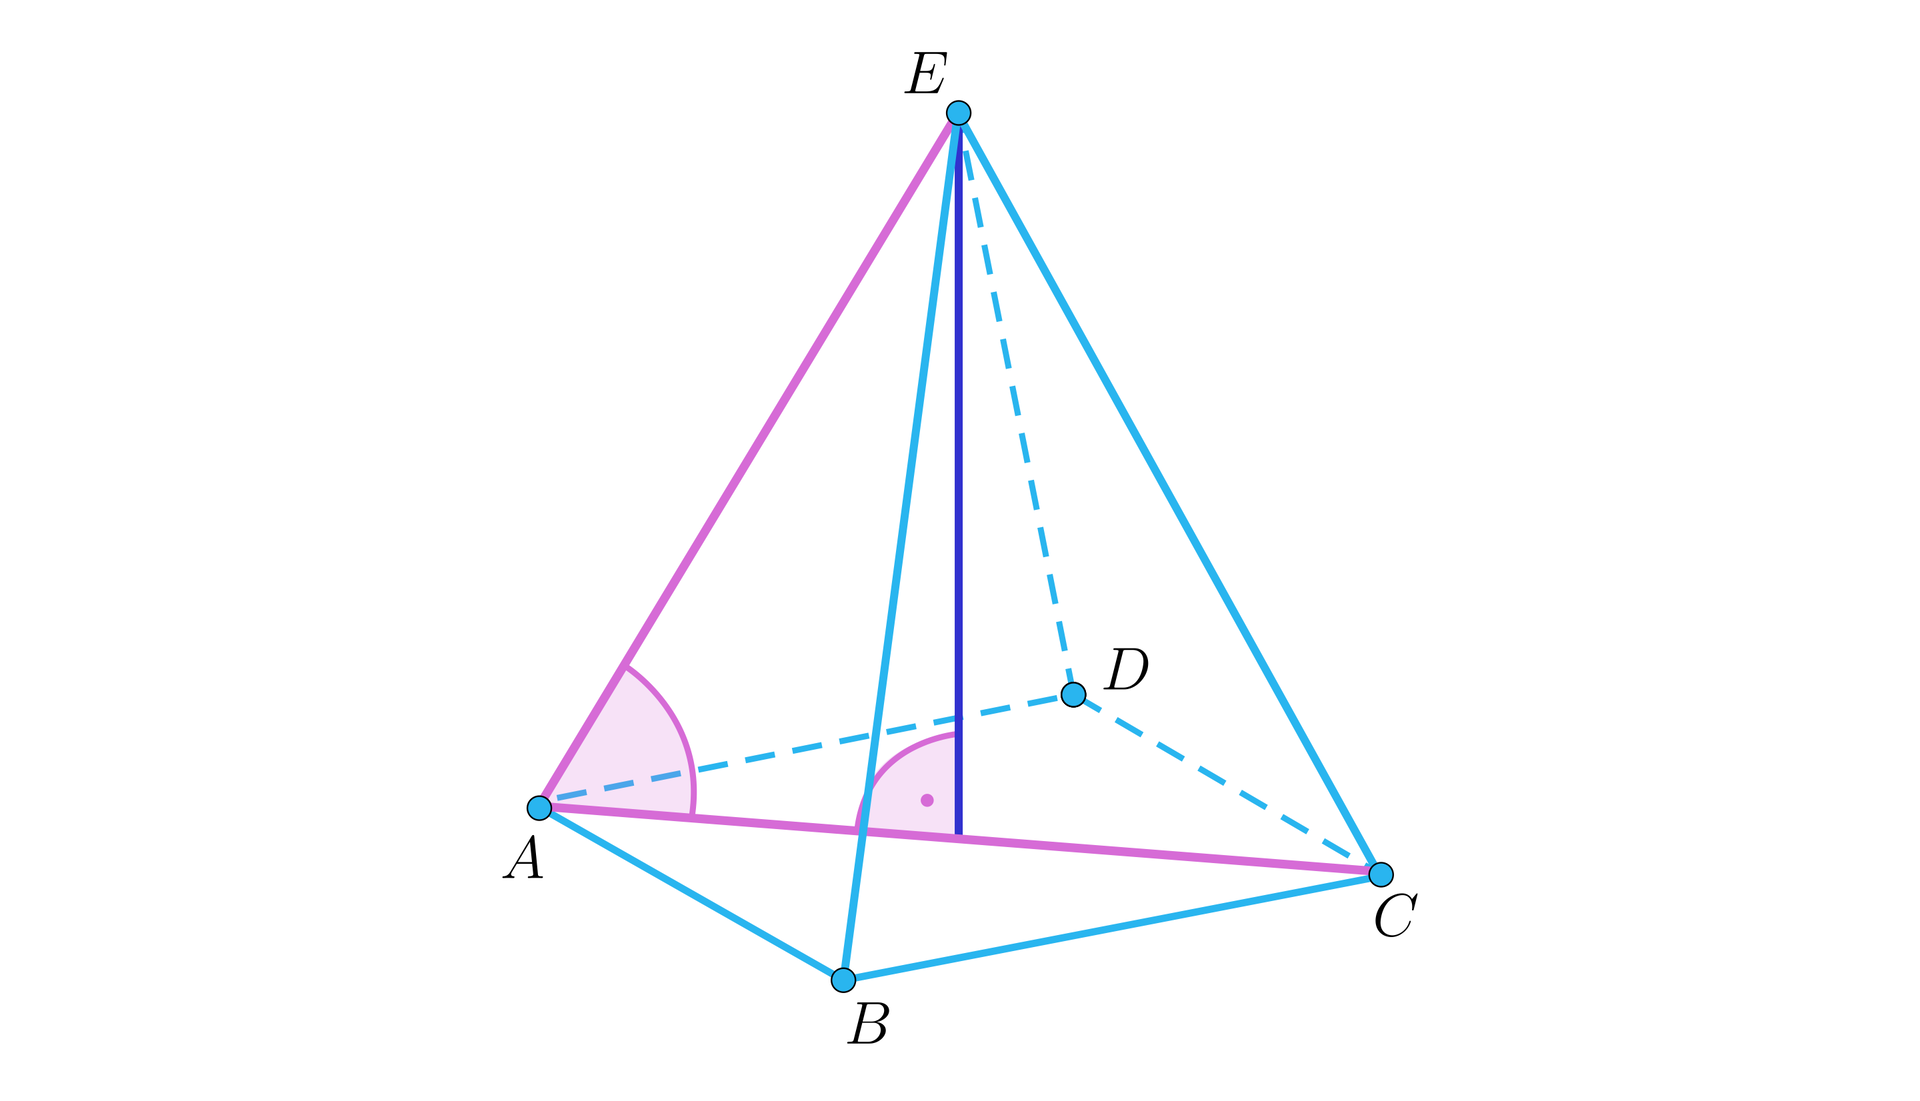 Rysunek przedstawia ostrosłup prawidłowy czworokątny o podstawie A B C D i wierzchołku E. Z wierzchołka upuszczona jest wysokość. Na rysunku oznaczona jest również przekątna podstawy A C oraz zaznaczone kąty: kąt prosty między wysokością a przekątną A C oraz kąt nachylenia krawędzi A E do przekątnej A C.